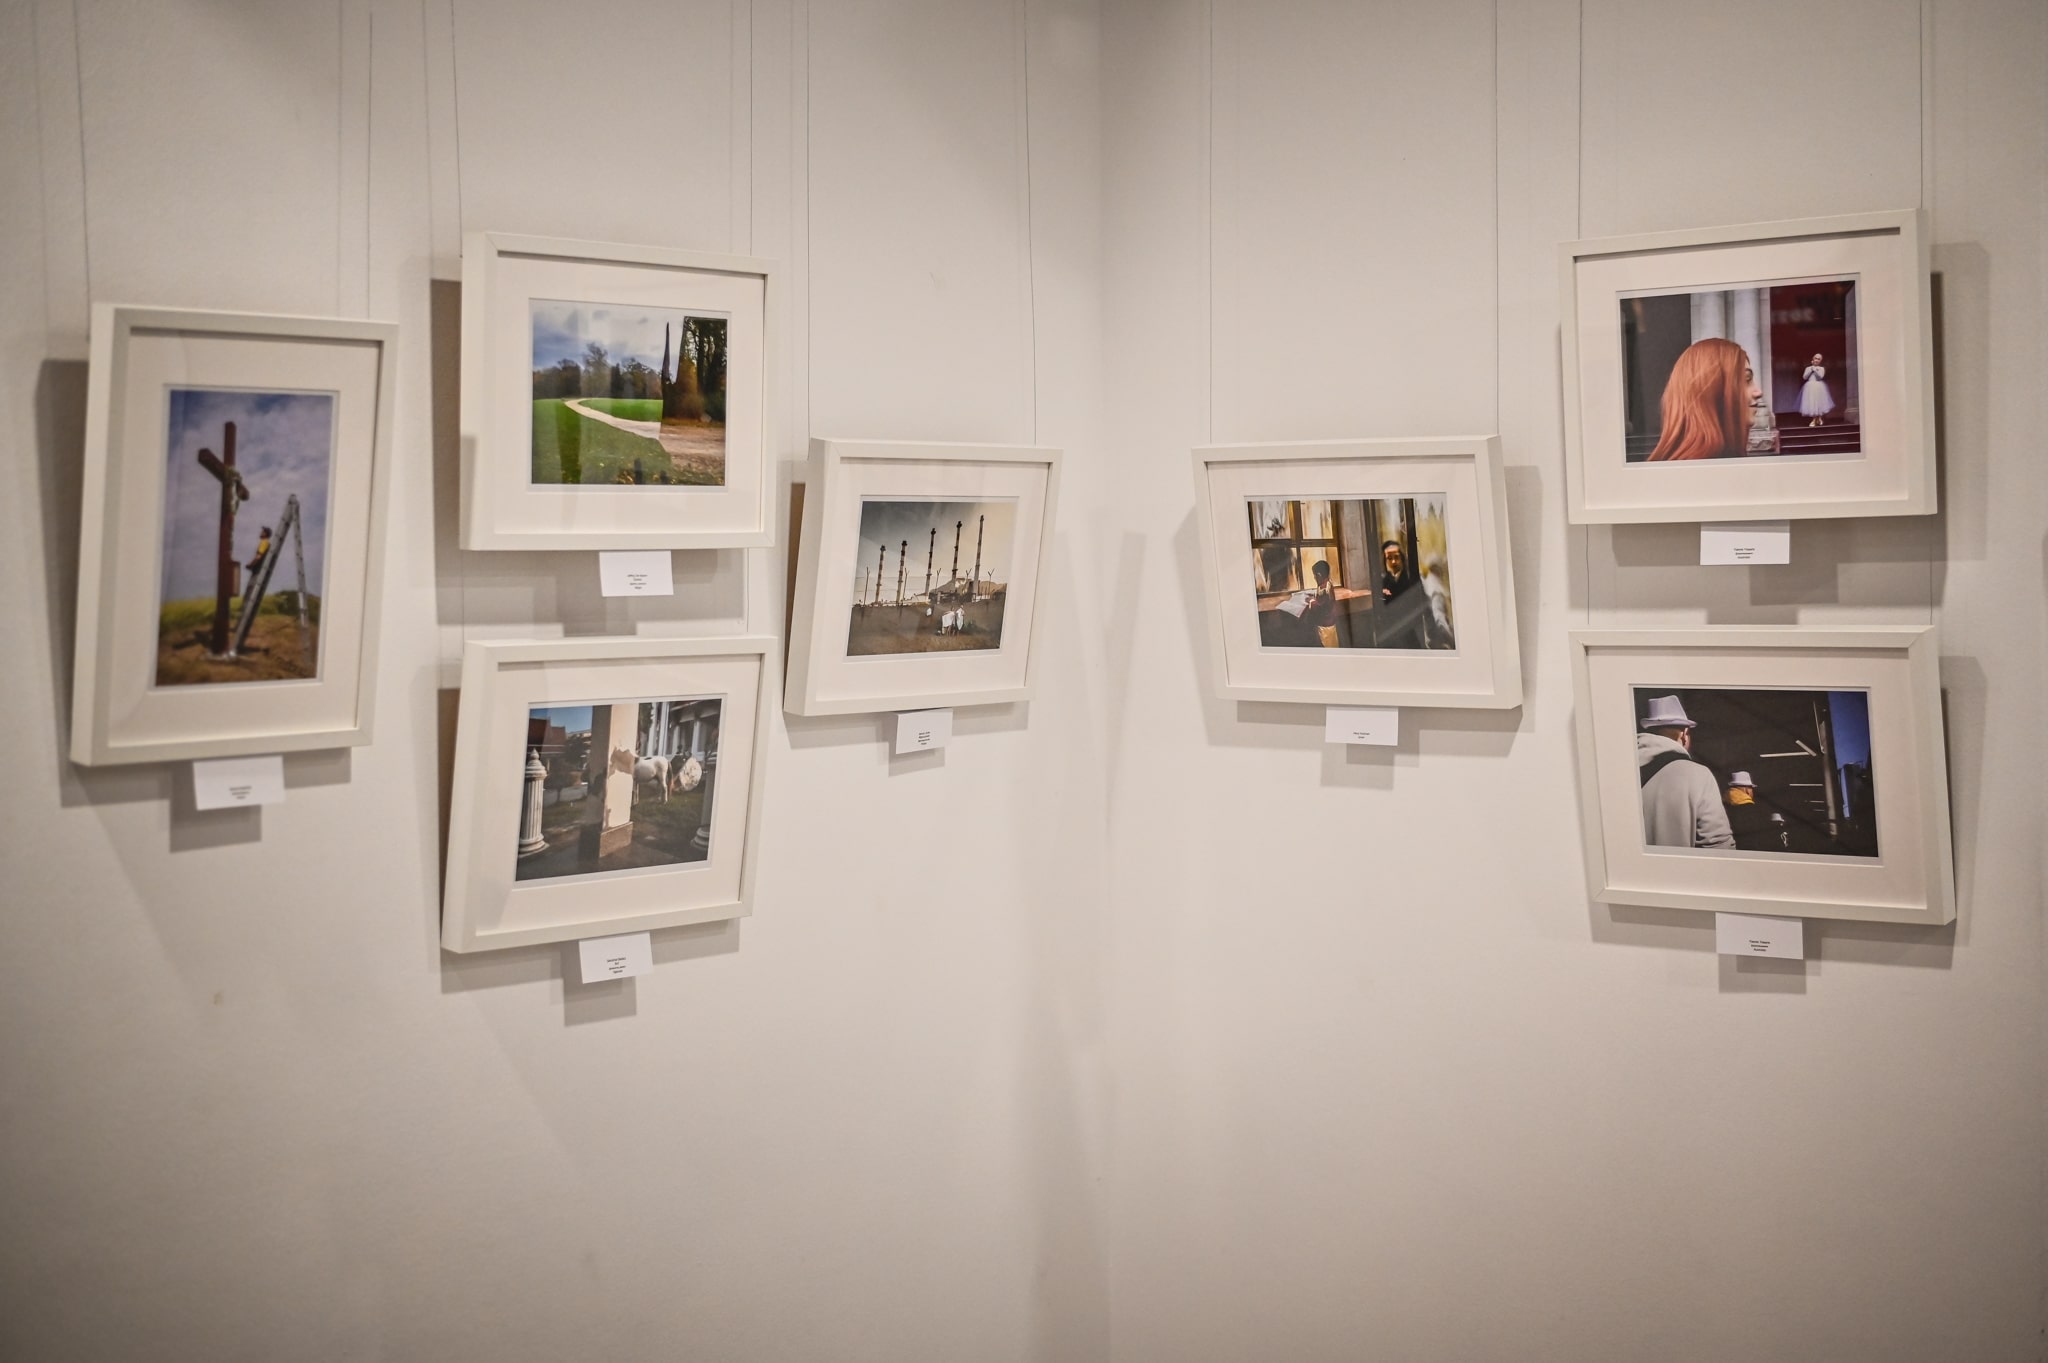 zbiór fotografii oprawionych w ramy zawieszonych na ścianie w galerii sztuki